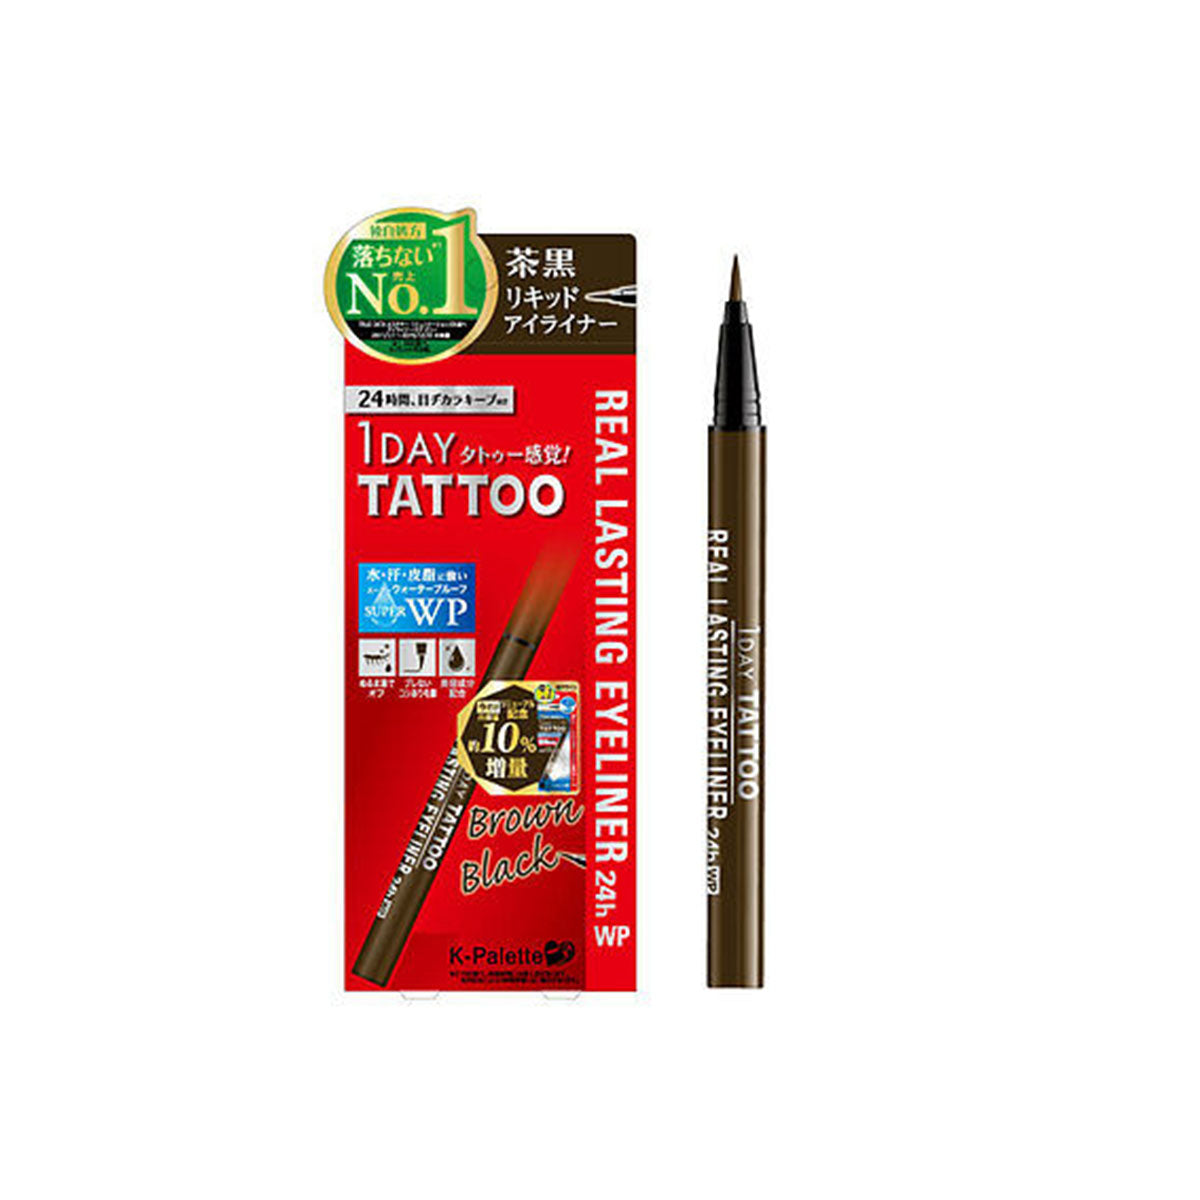 K-Palette Japan 1 Day Tattoo Real Lasting Liquid Makeup Eyeliner 24h WP  [Super Black]